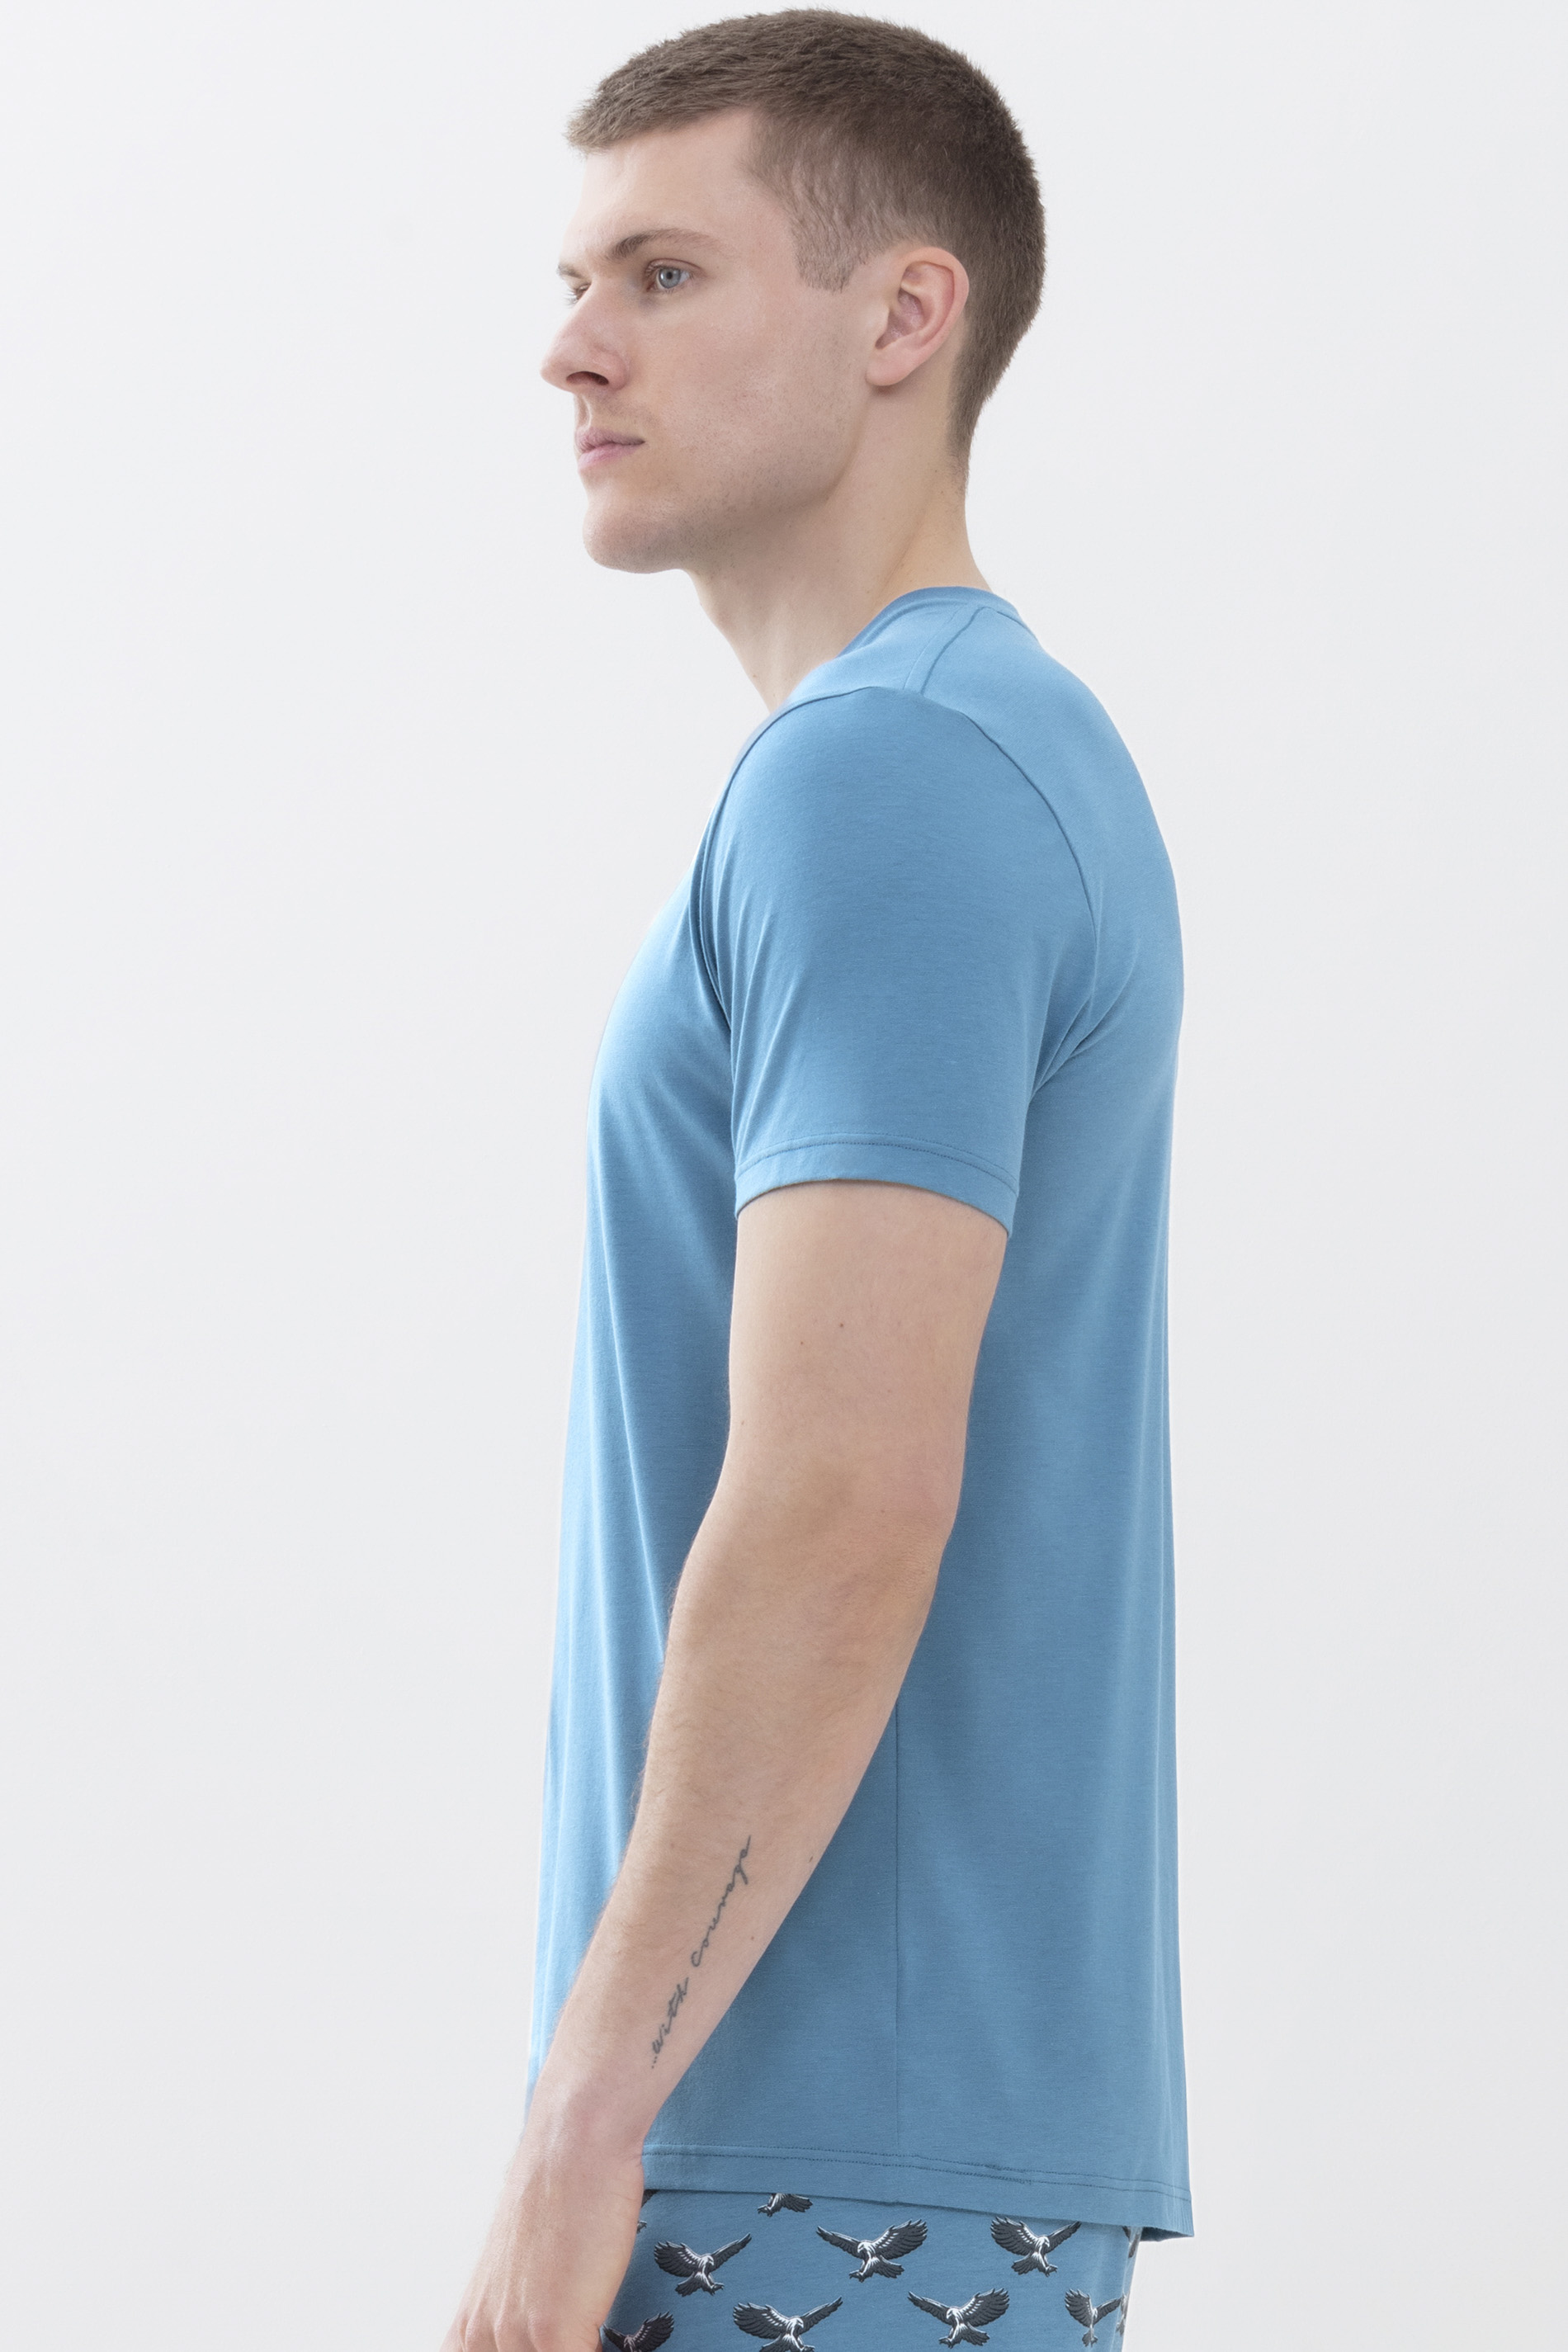 T-Shirt Yale Blue Dry Cotton Colour Detailansicht 02 | mey®